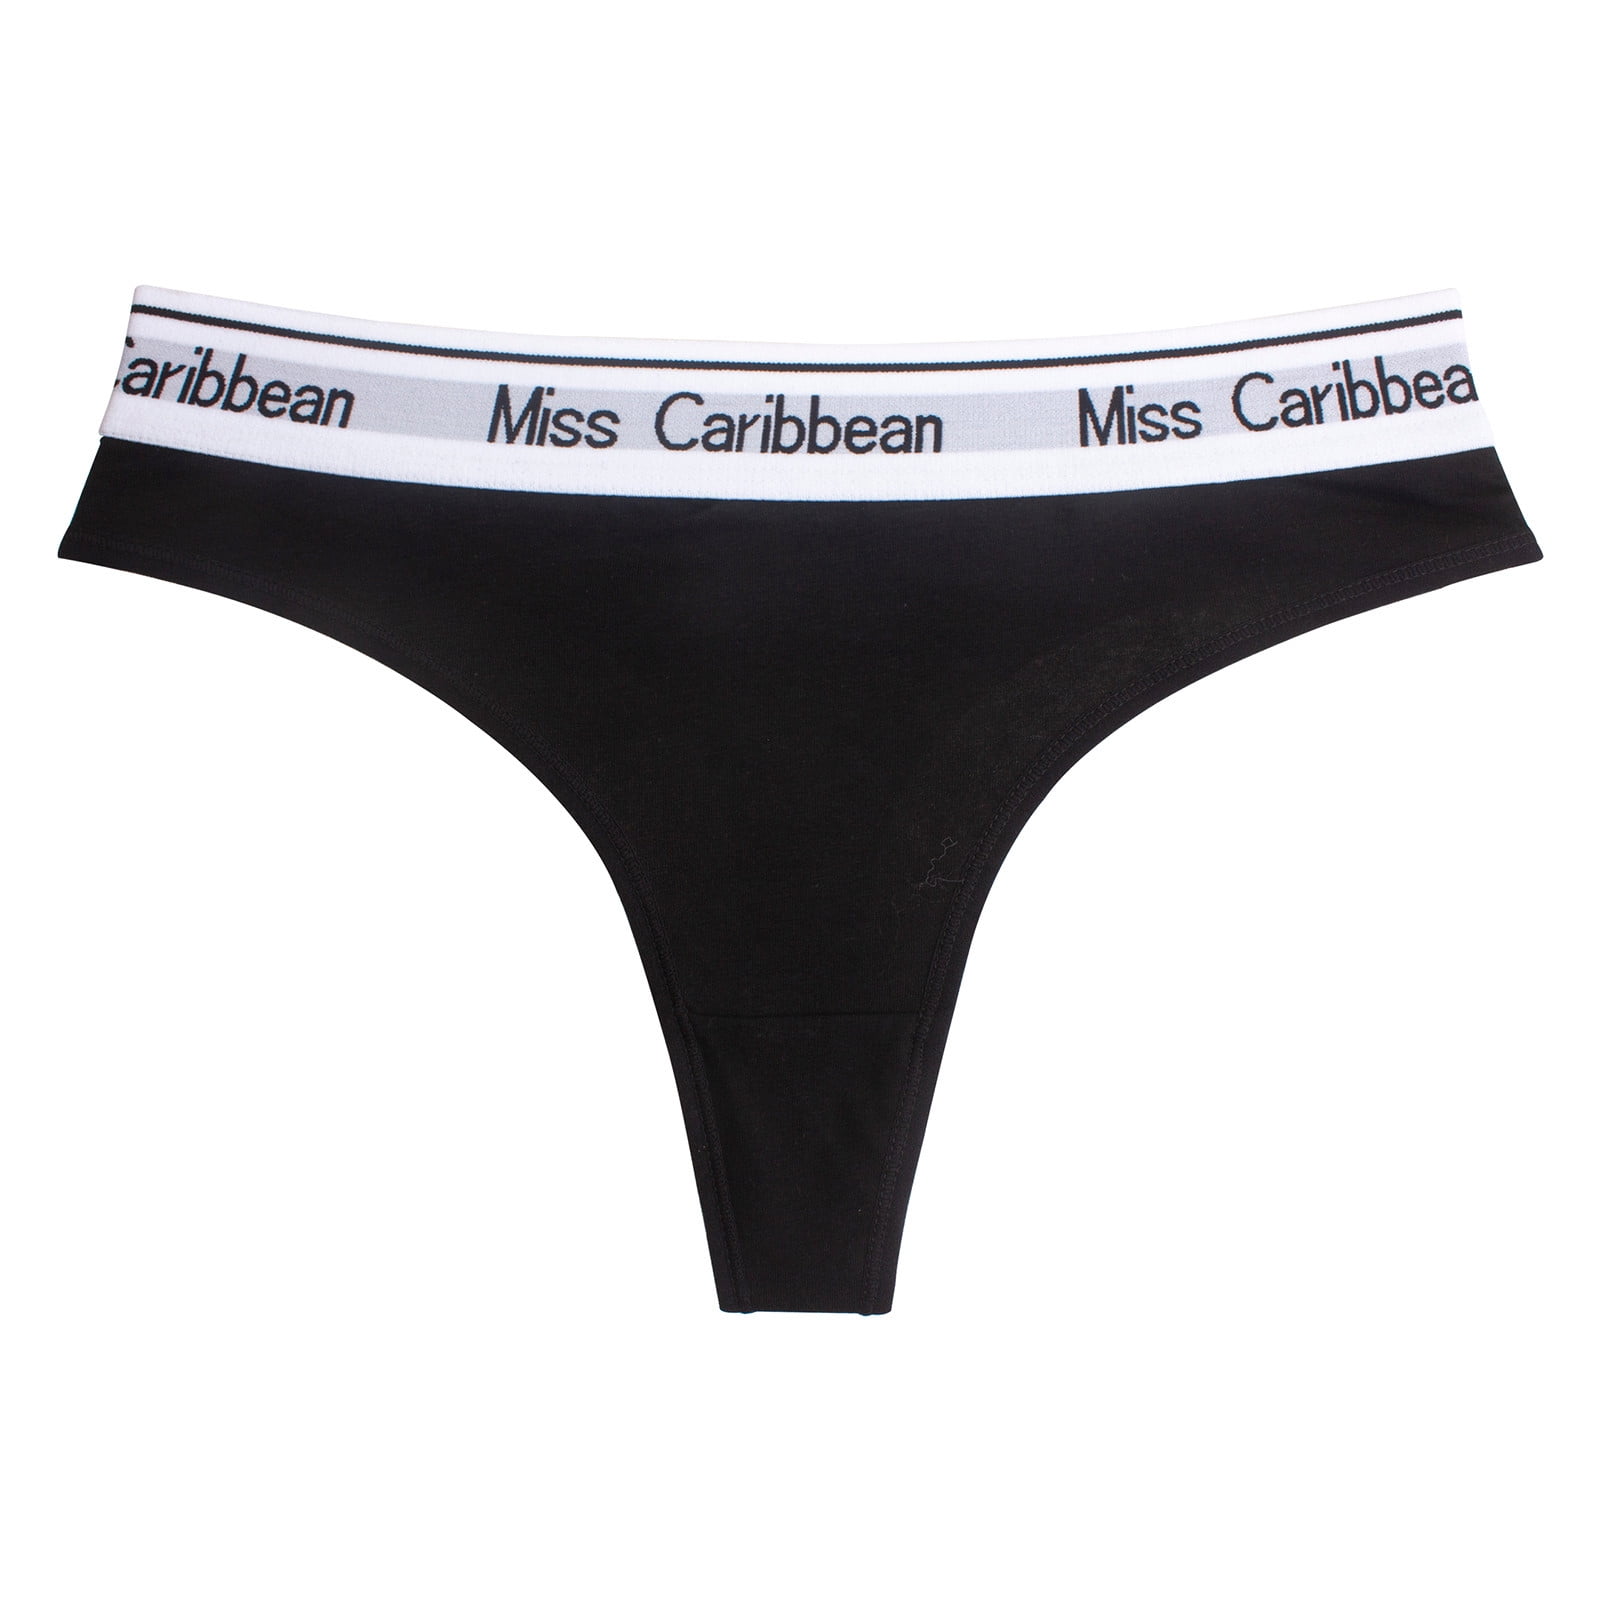 Frehsky underwear women Women's Panties Sport Striped Low Waist